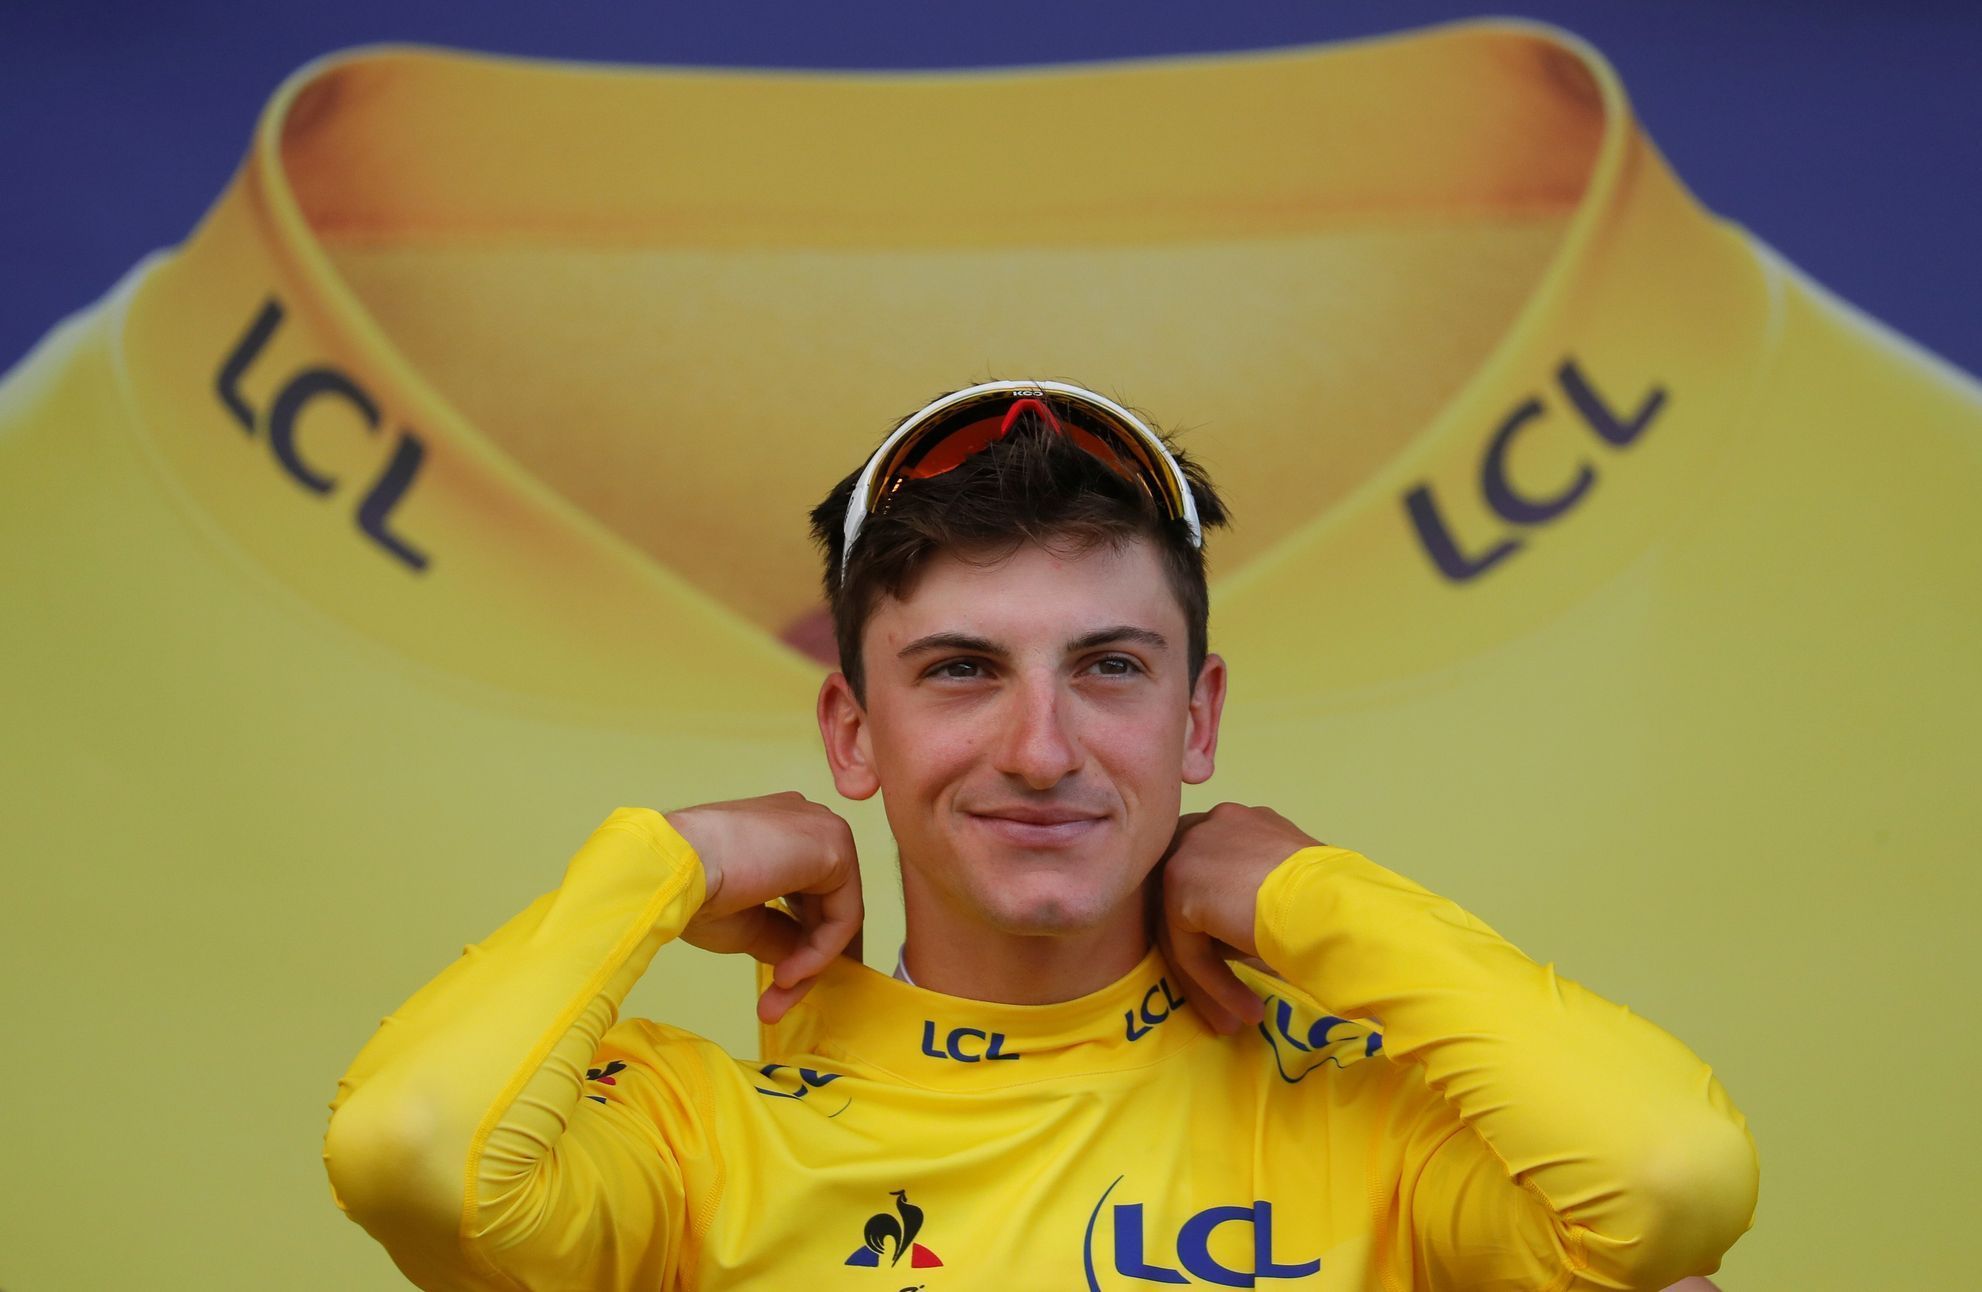 Gulio Ciccone v 6. etapě Tour de France 2019